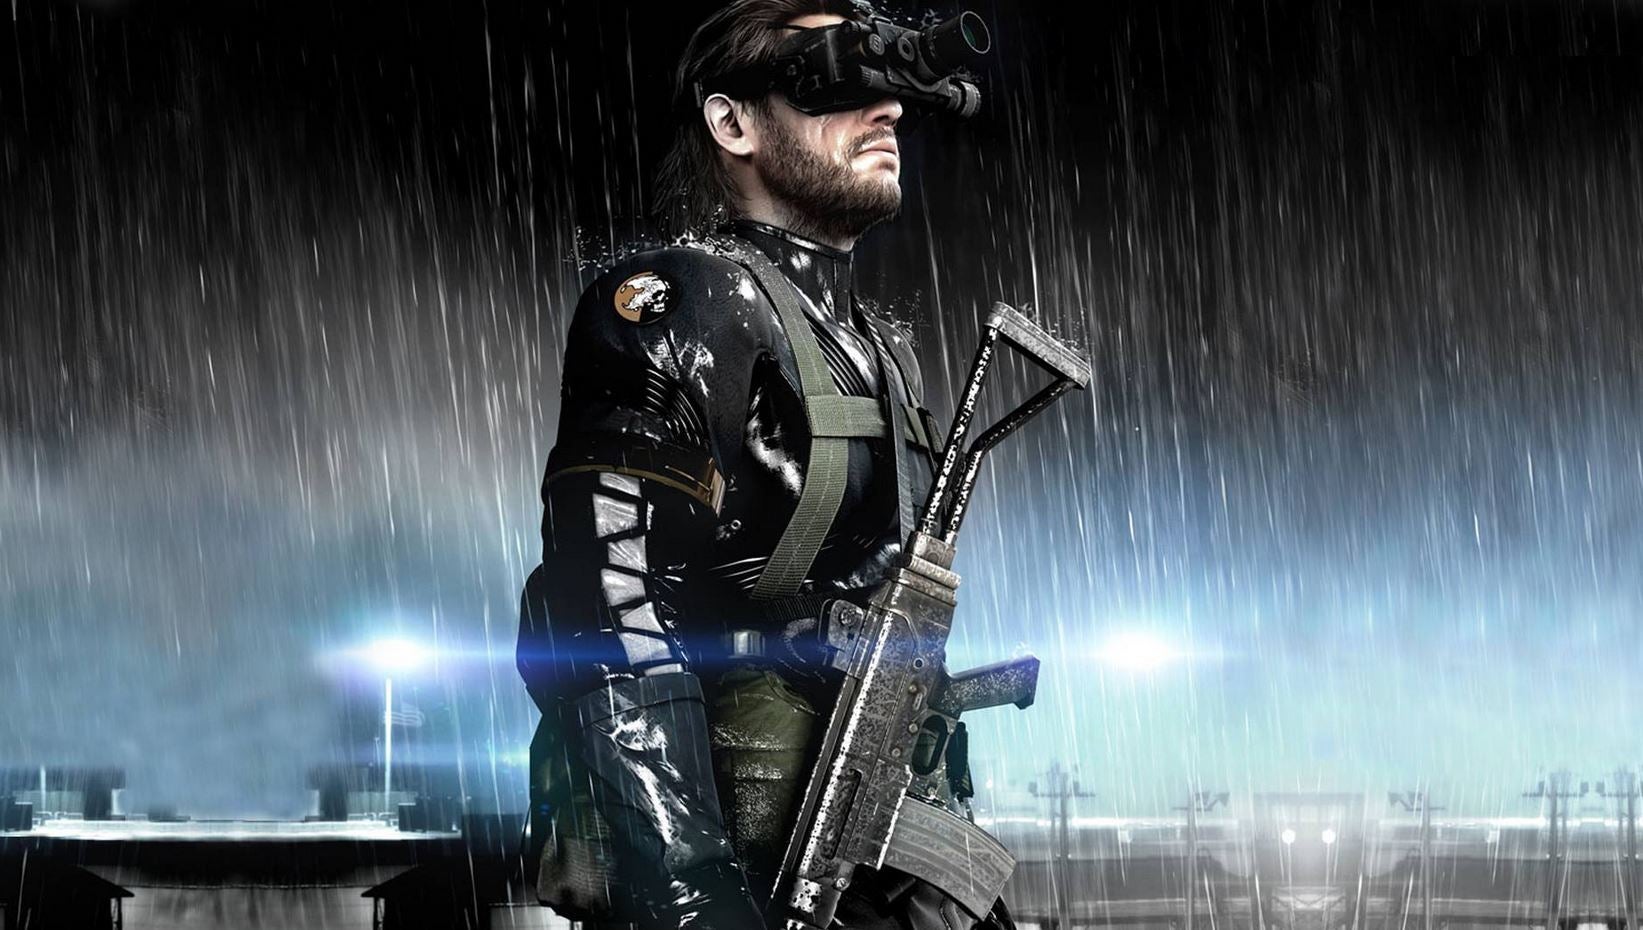 Obrazki dla Konami: „solidna” sprzedaż Metal Gear Solid 5: Ground Zeroes na PC